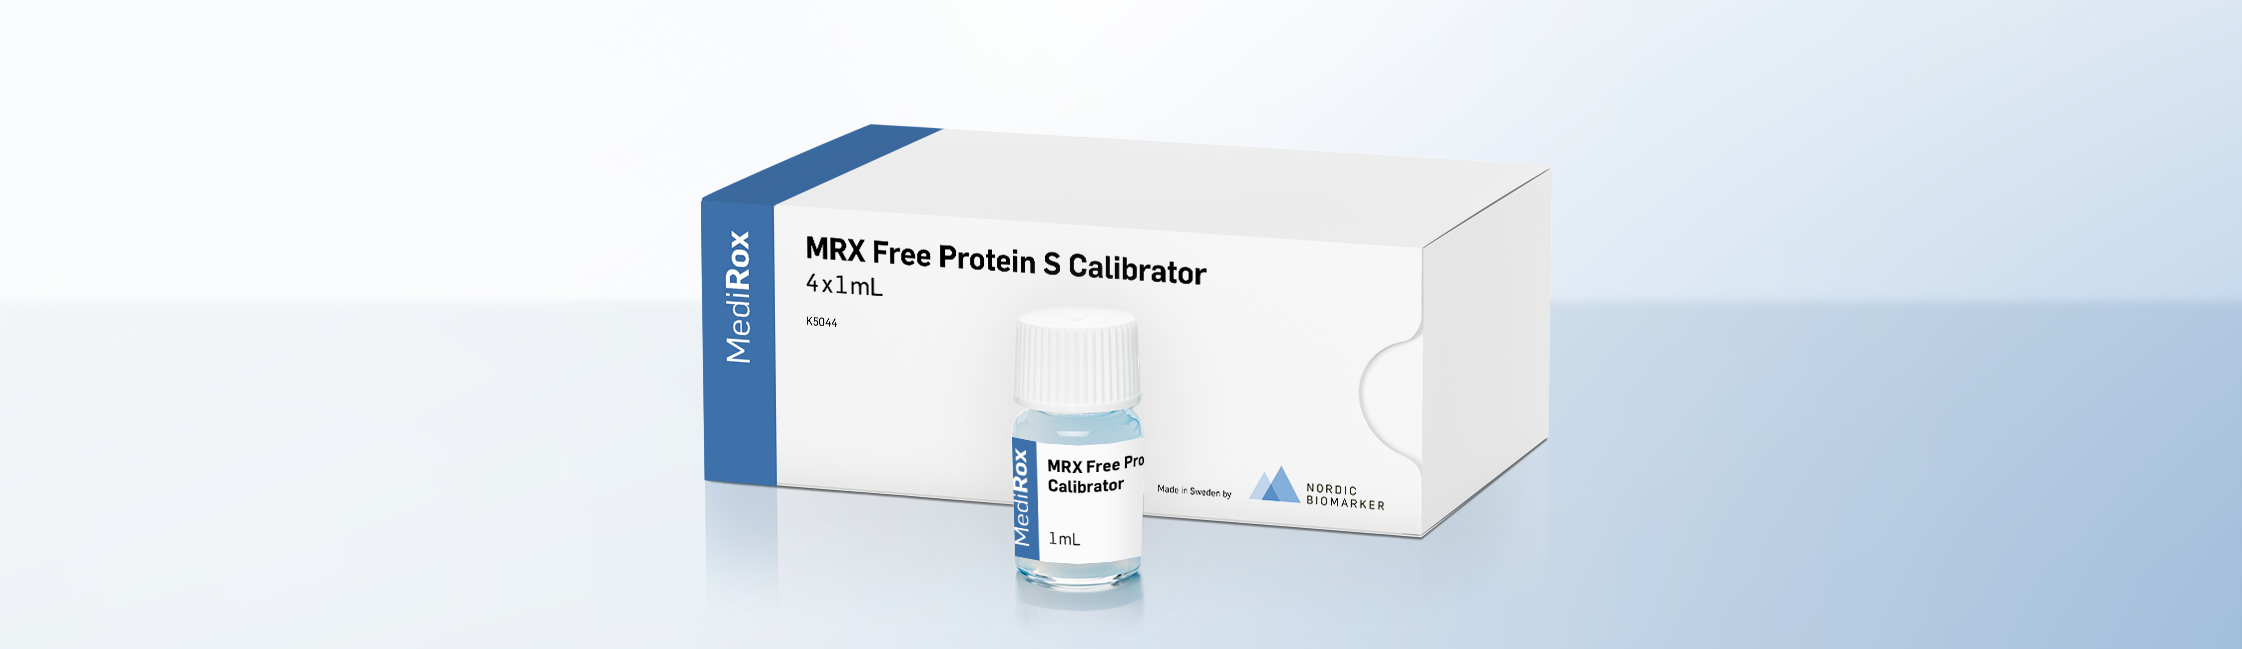 MRX Free Protein S Calibrator